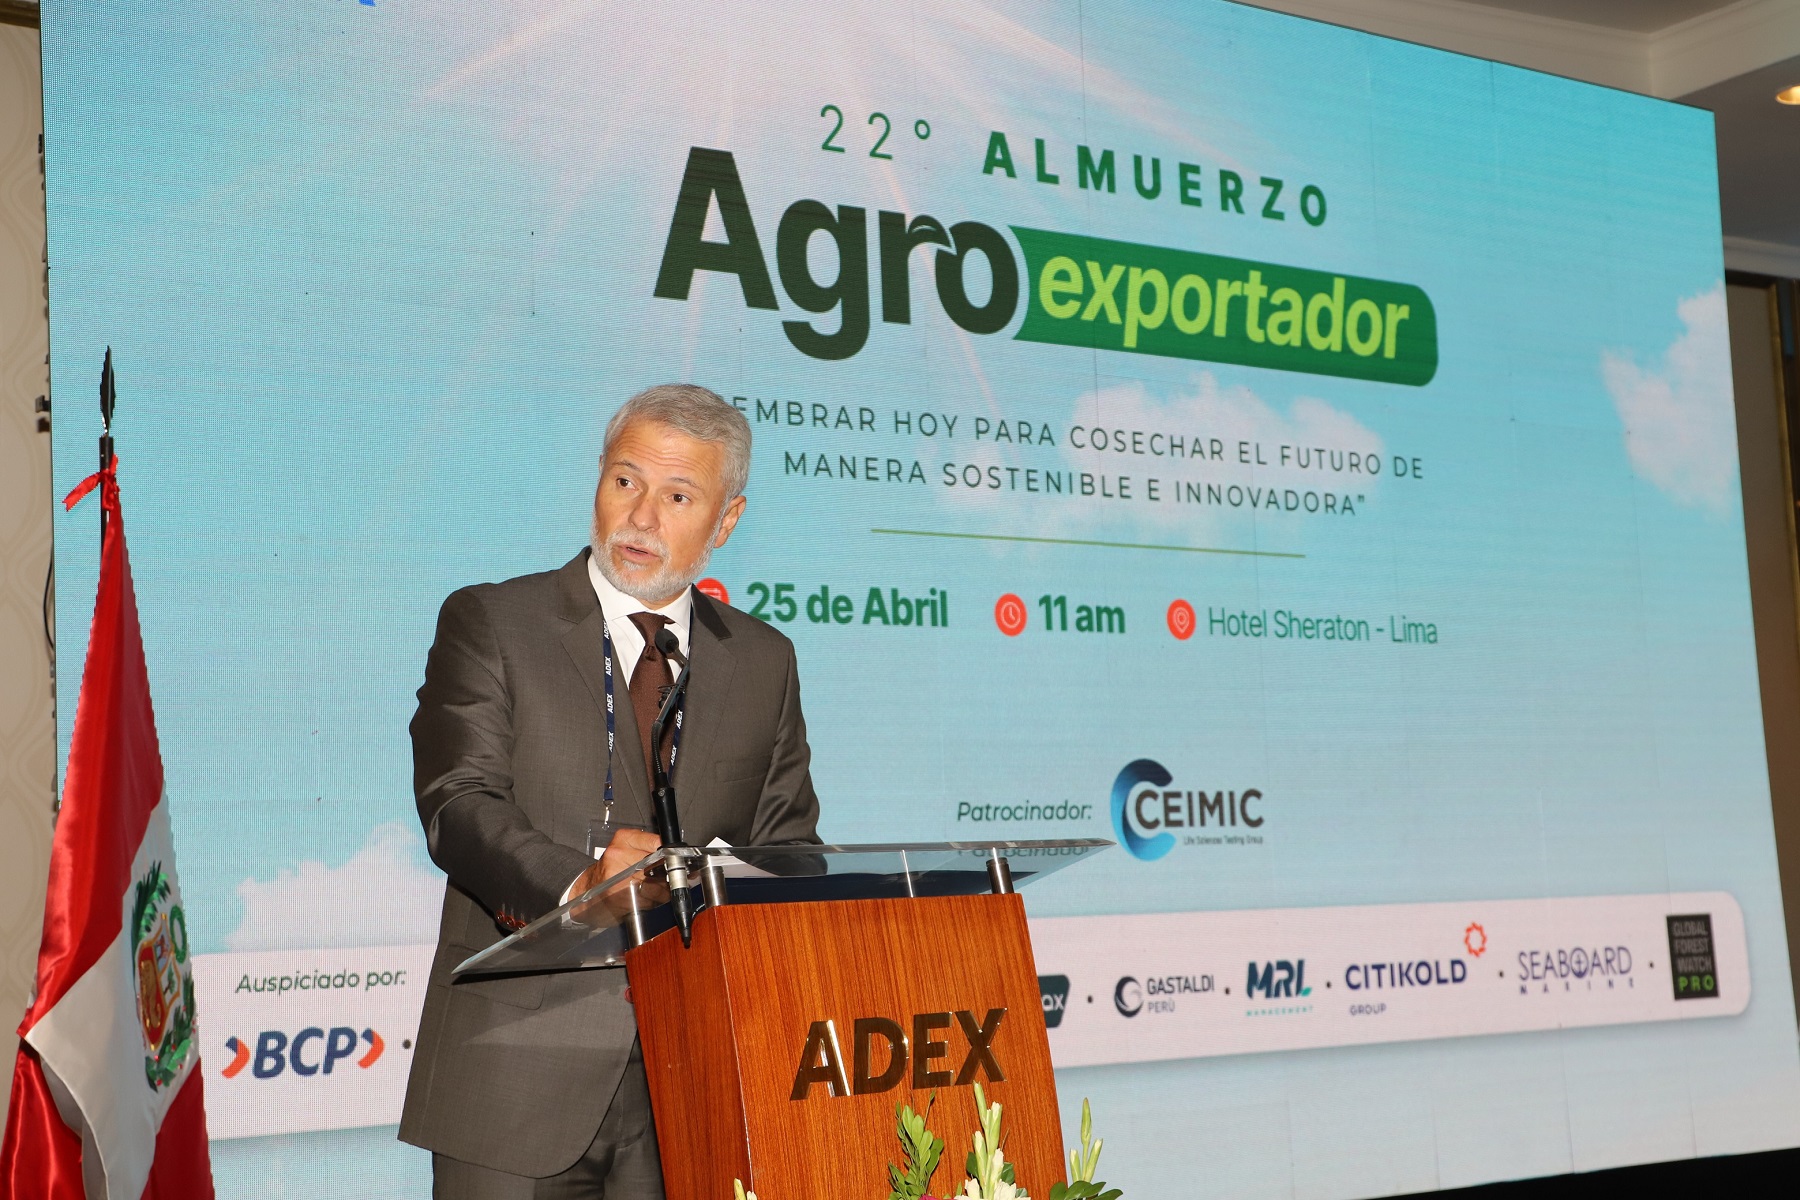 En el 22° Almuerzo Agroexportador ADEX dio a conocer agenda pendiente para continuar posicionando agroexportaciones del país a más mercados en el mundo.